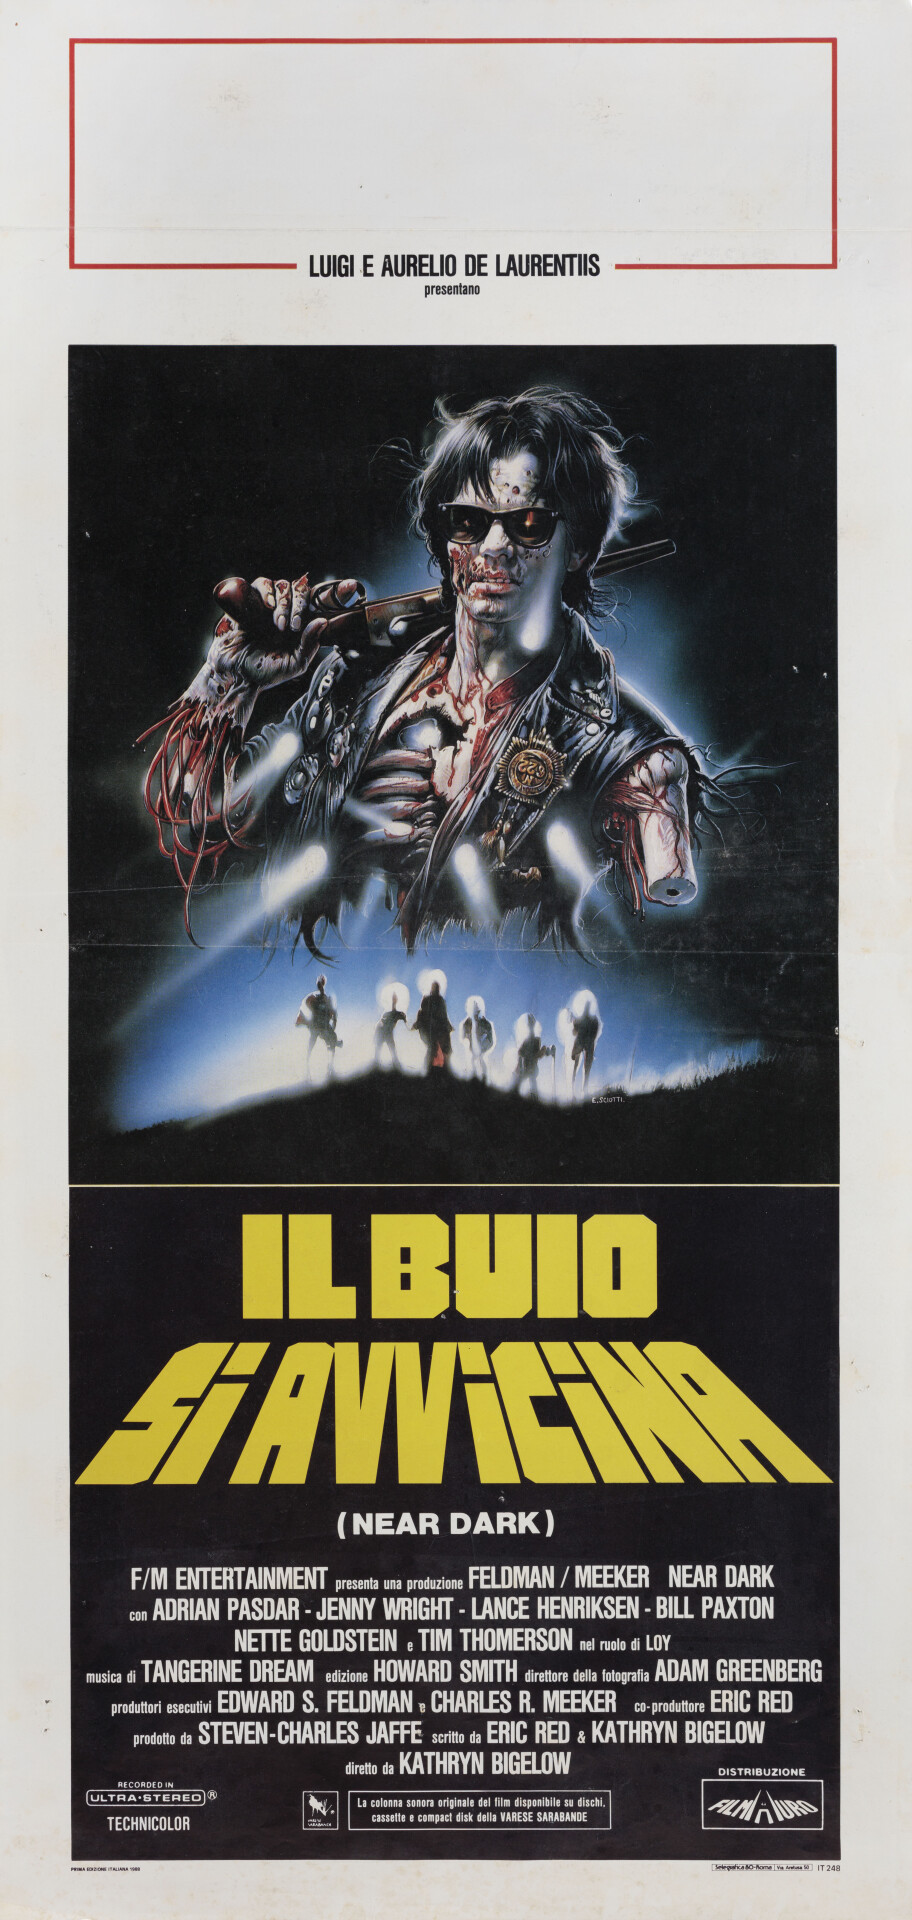 Почти стемнело (Near Dark, 1987), режиссёр Кэтрин Бигелоу, итальянский постер к фильму, автор Энцо Скиотти (ужасы, 1988 год)